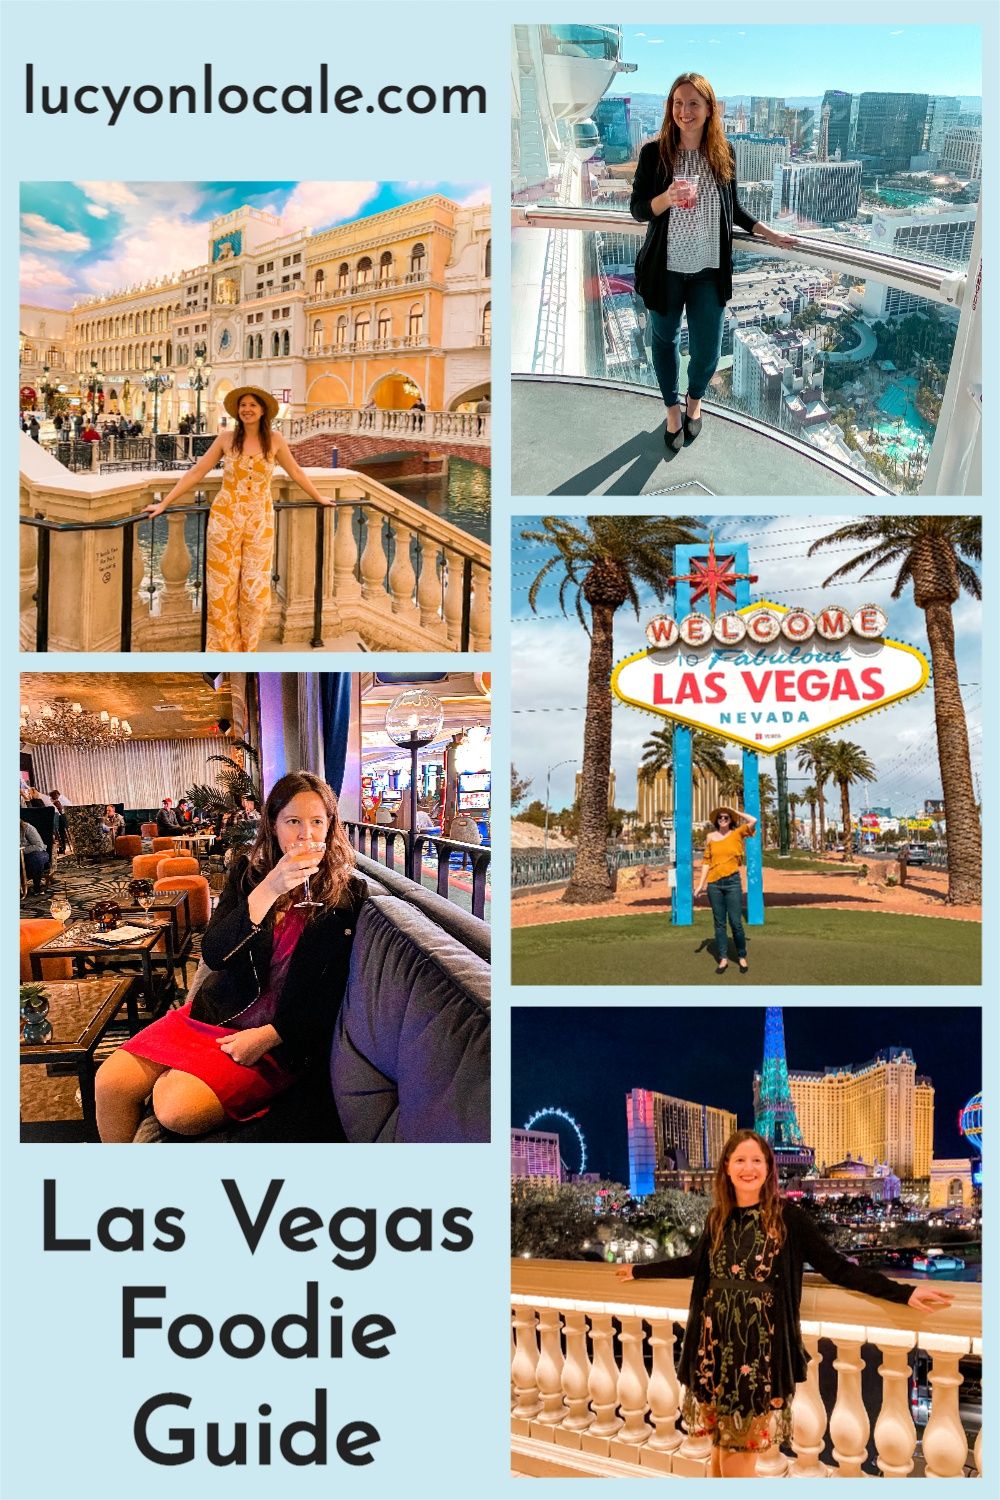 Las Vegas foodie guide